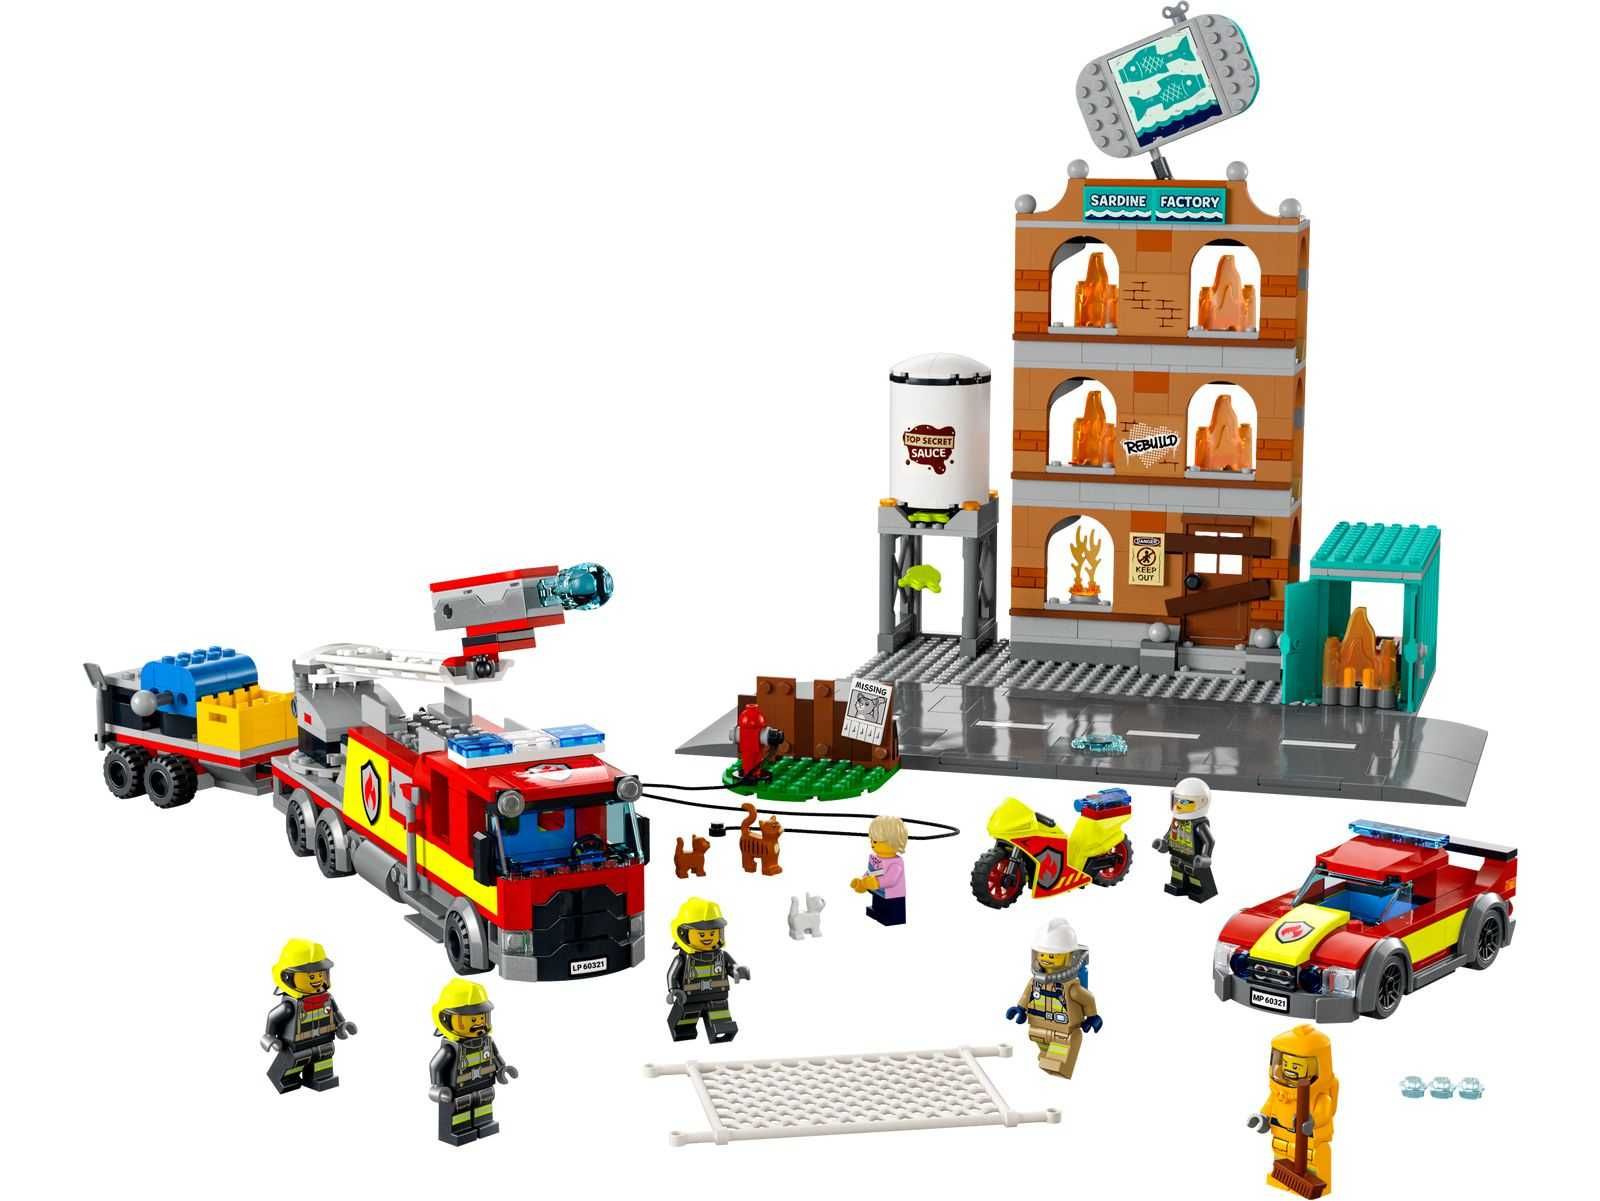 LEGO 60321 City - Straż pożarna